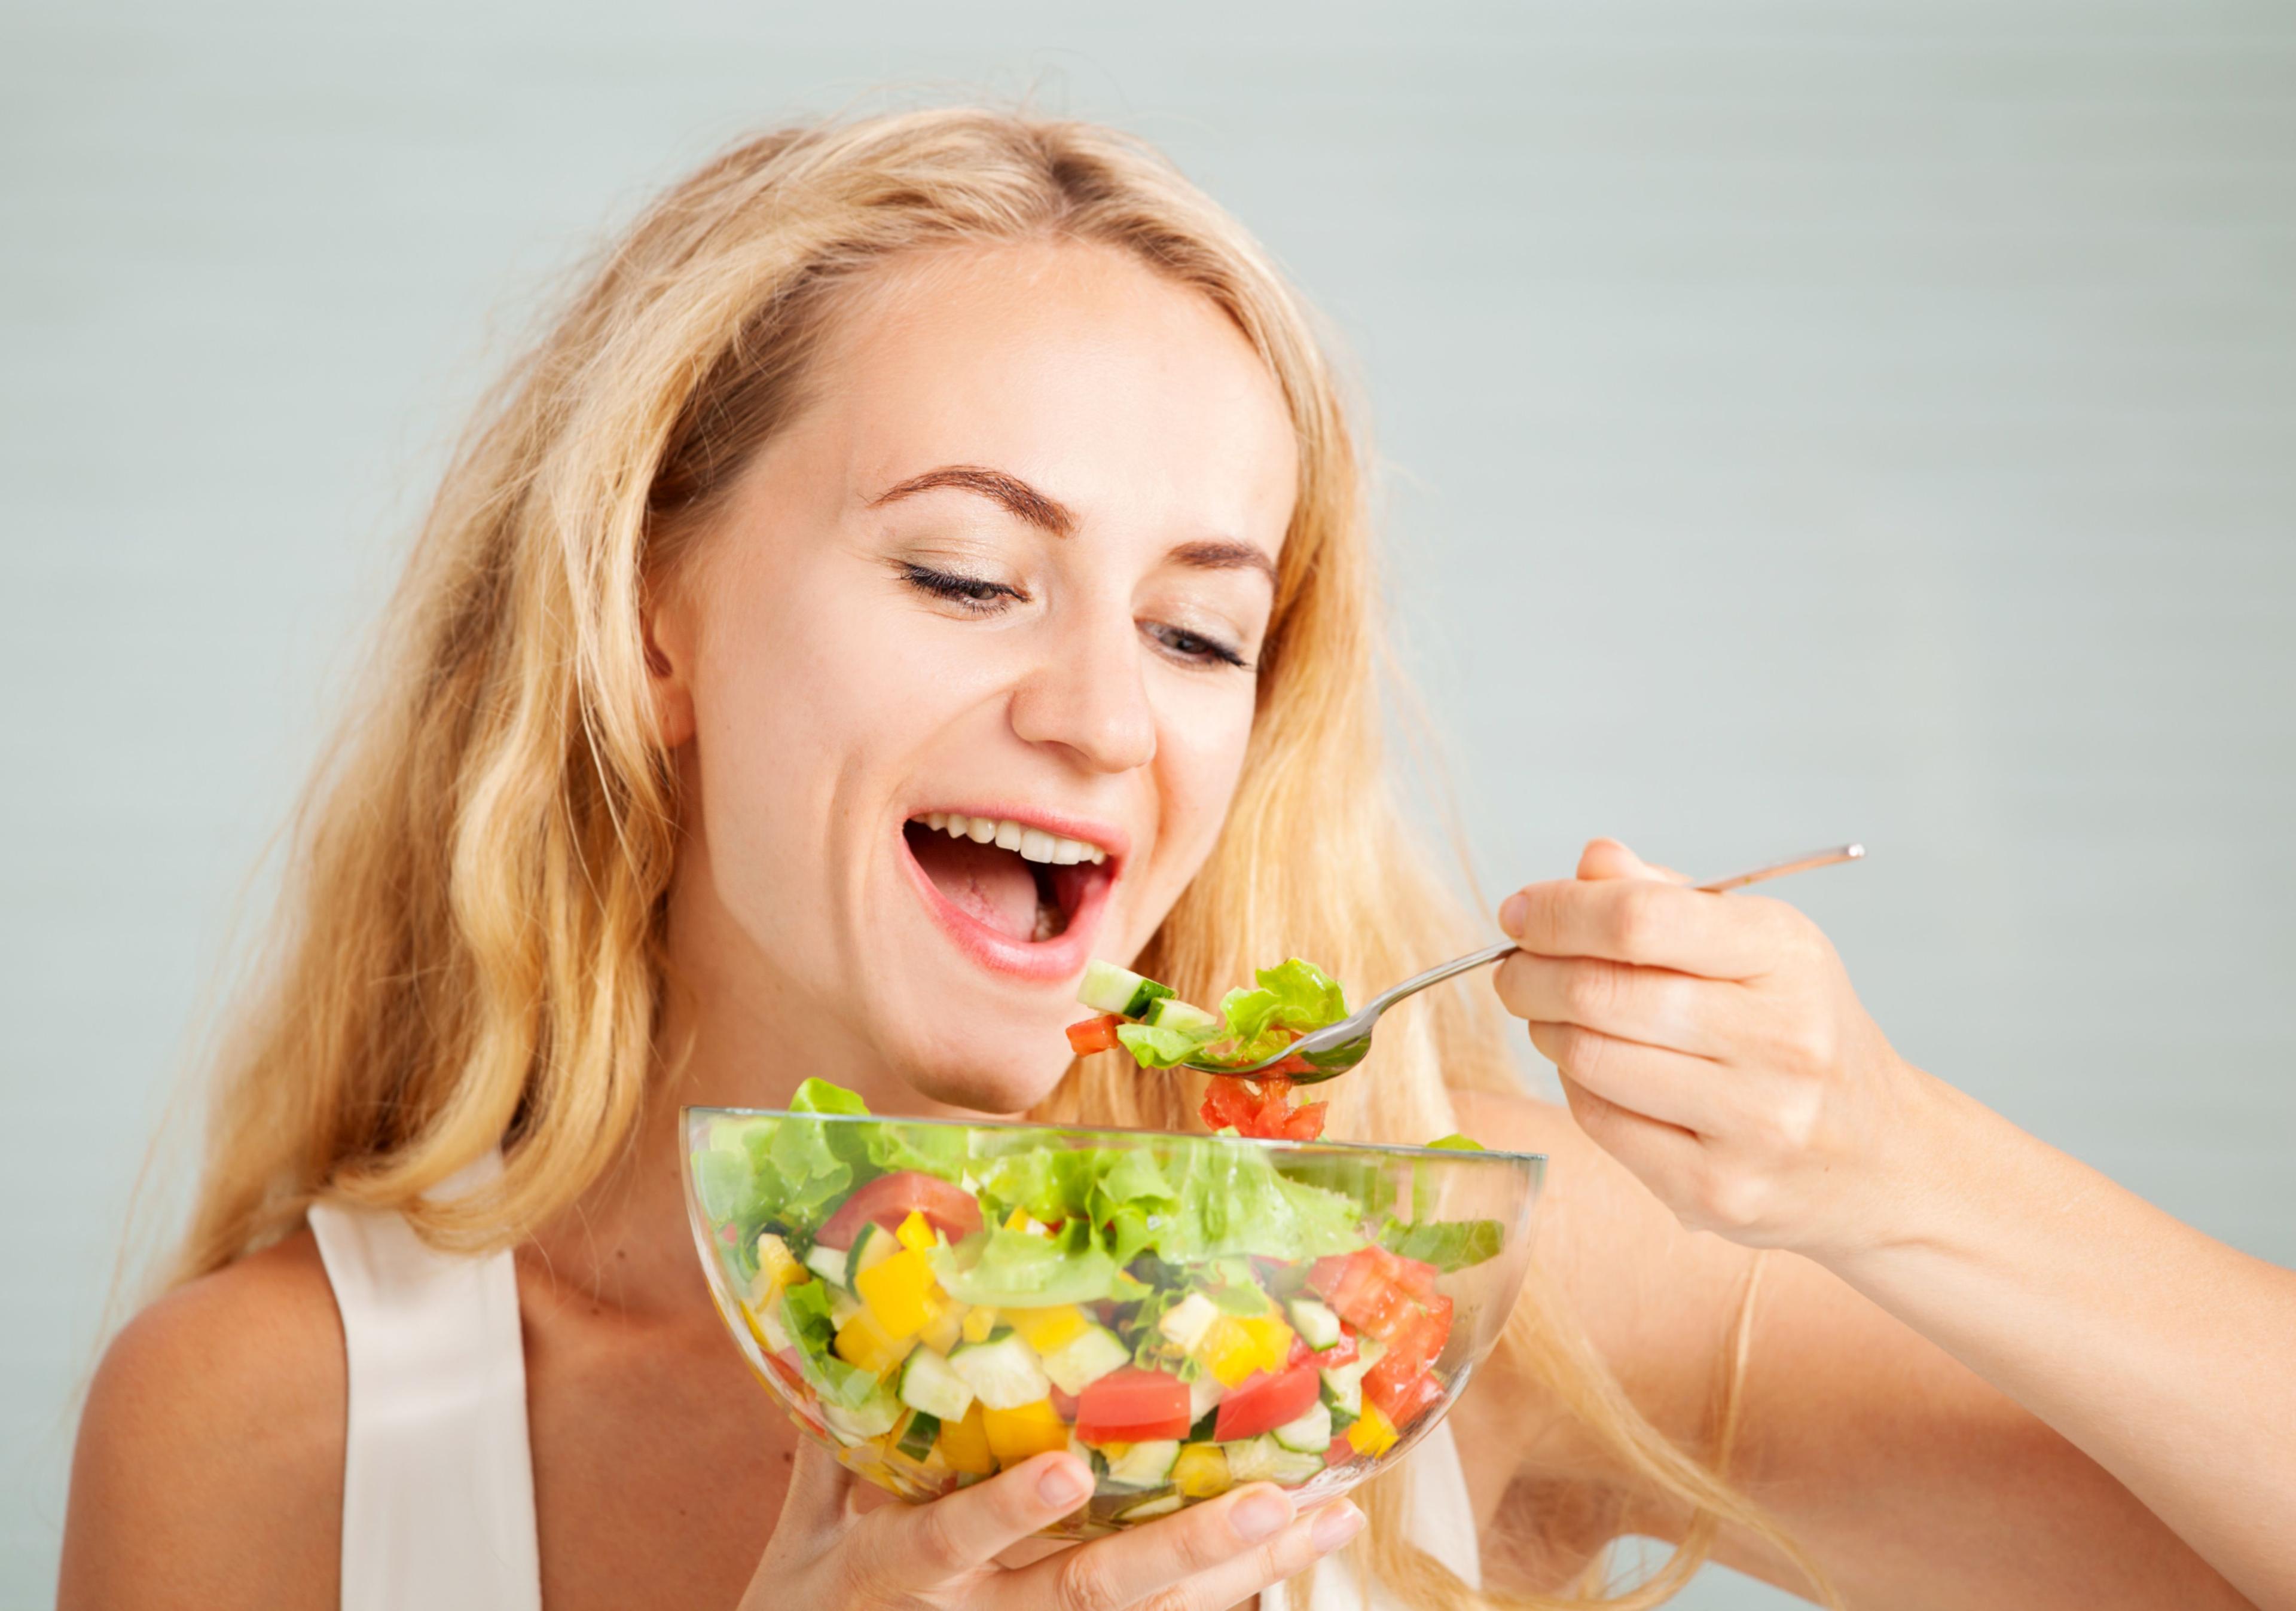 Zelena salata čuva zdravlje čovjeka